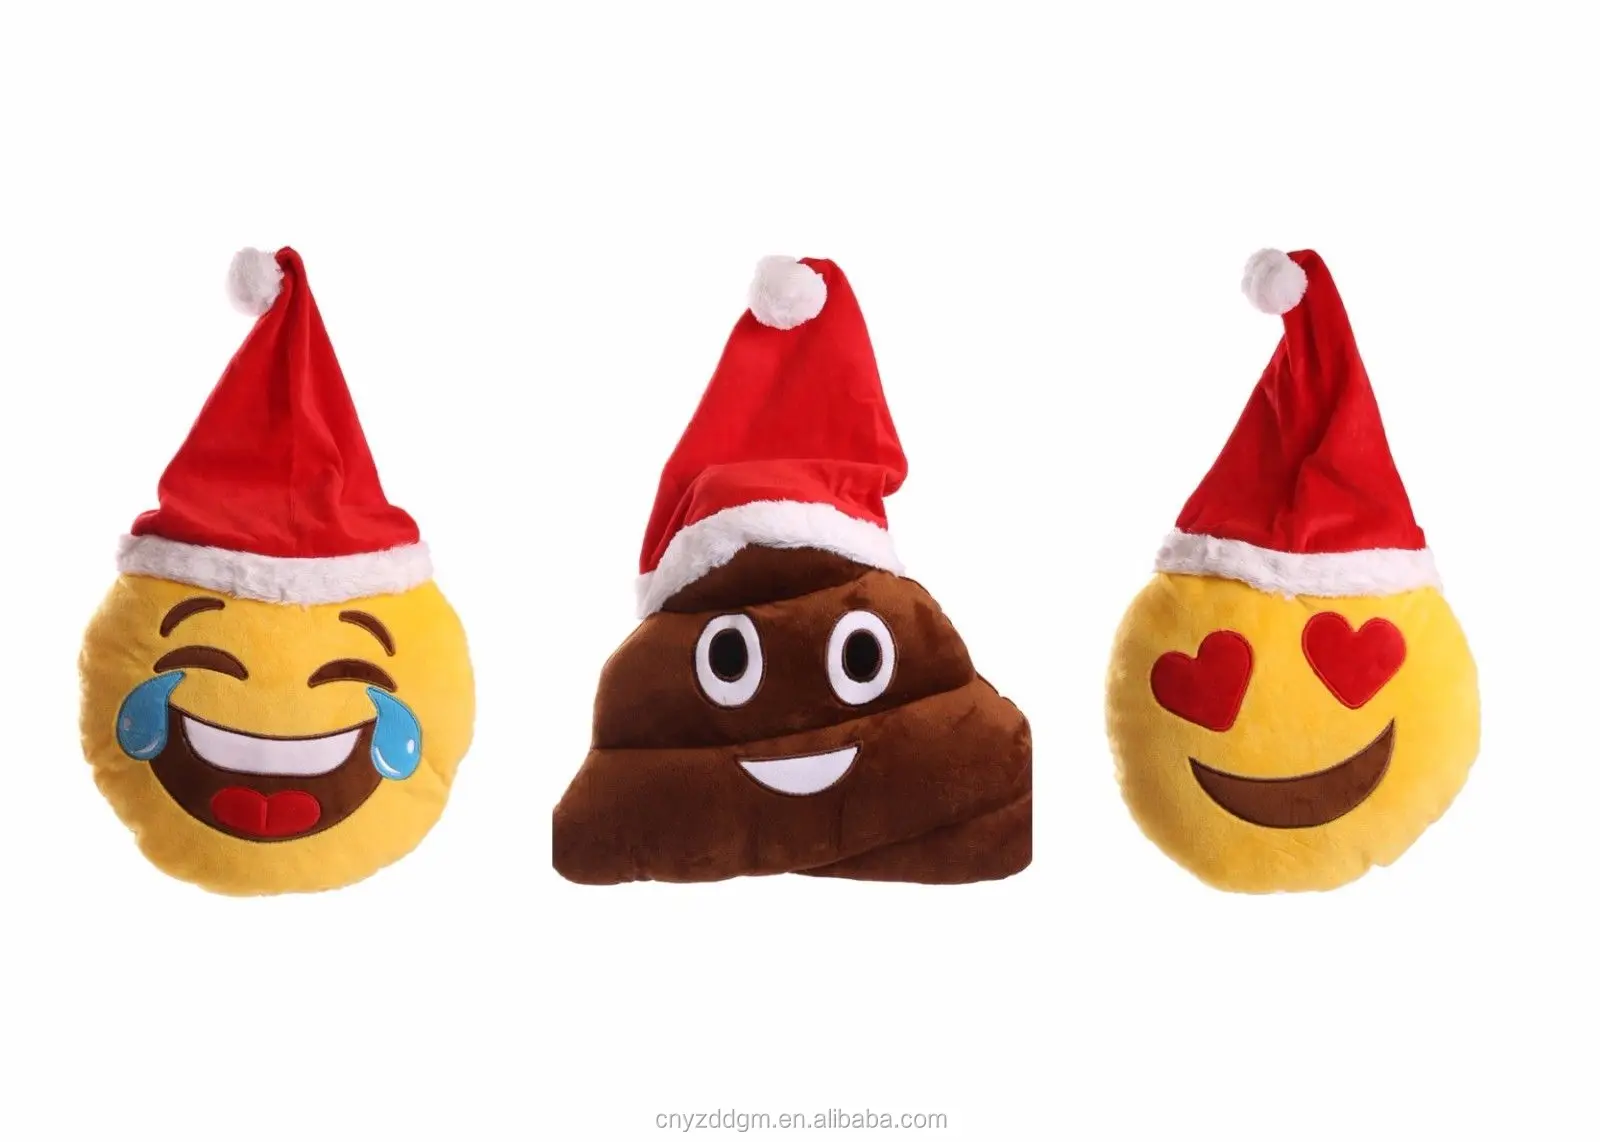 無料サンプルクリスマス絵文字サンタ帽子ぬいぐるみクッション Emotive 3 デザイン楽しい安いための大人 女性 ティーン Buy クリスマス絵文字ぬいぐるみクッション サンタ帽子ぬいぐるみクッション クリスマス絵文字サンタ帽子 Product On Alibaba Com